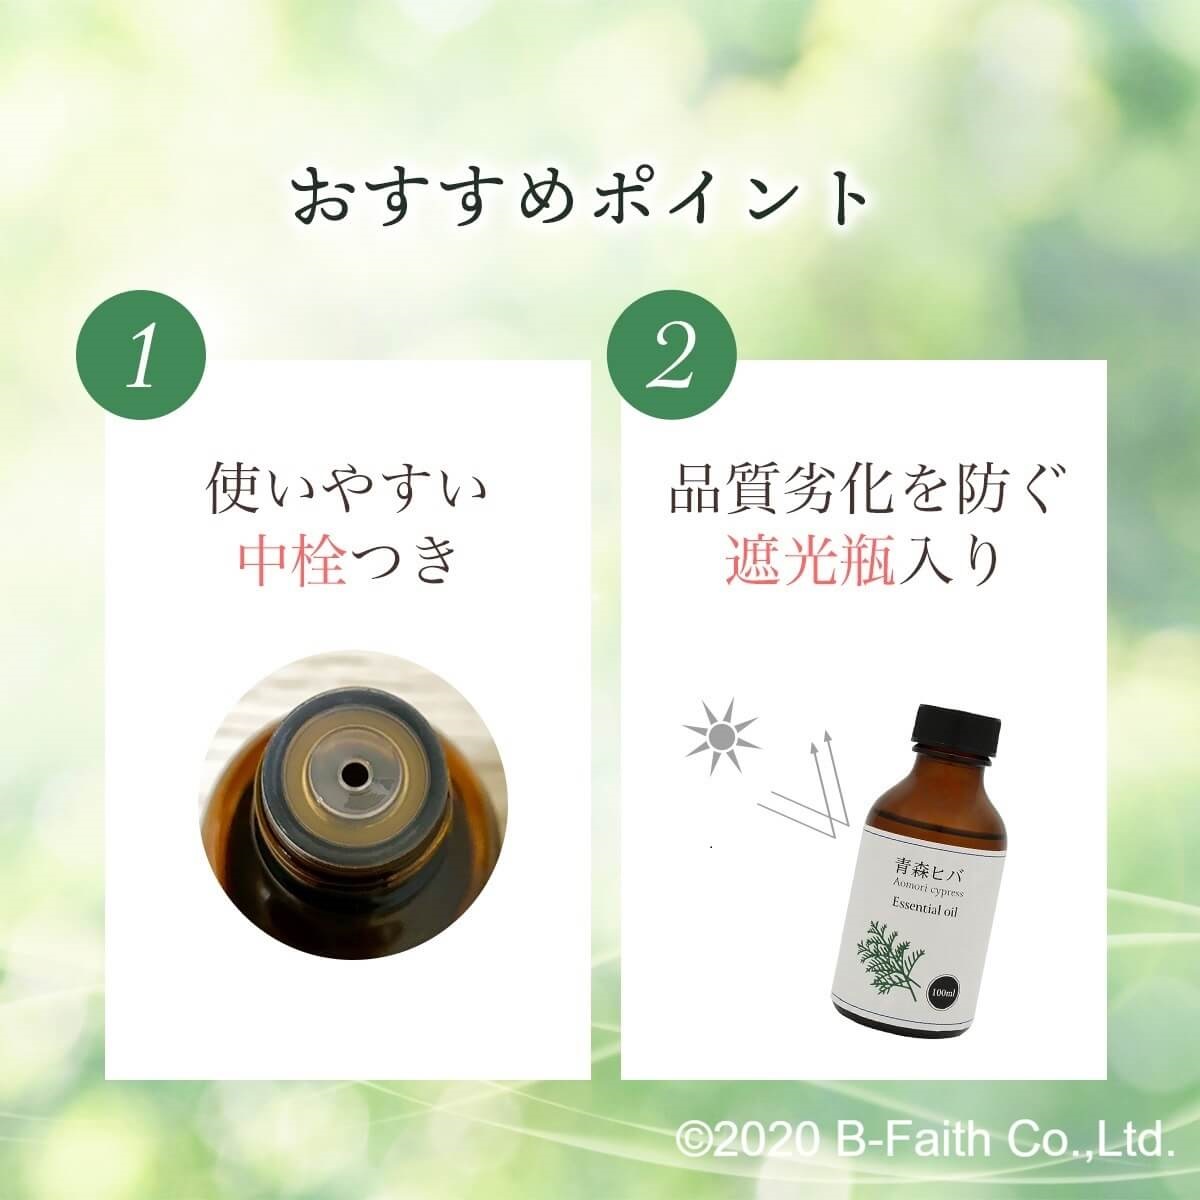  Aomori prefecture production natural .. oil 100ml. oil aroma Aomori hiba oil insect repellent dog moth repellent bath bathing spray deodorization essential oil 